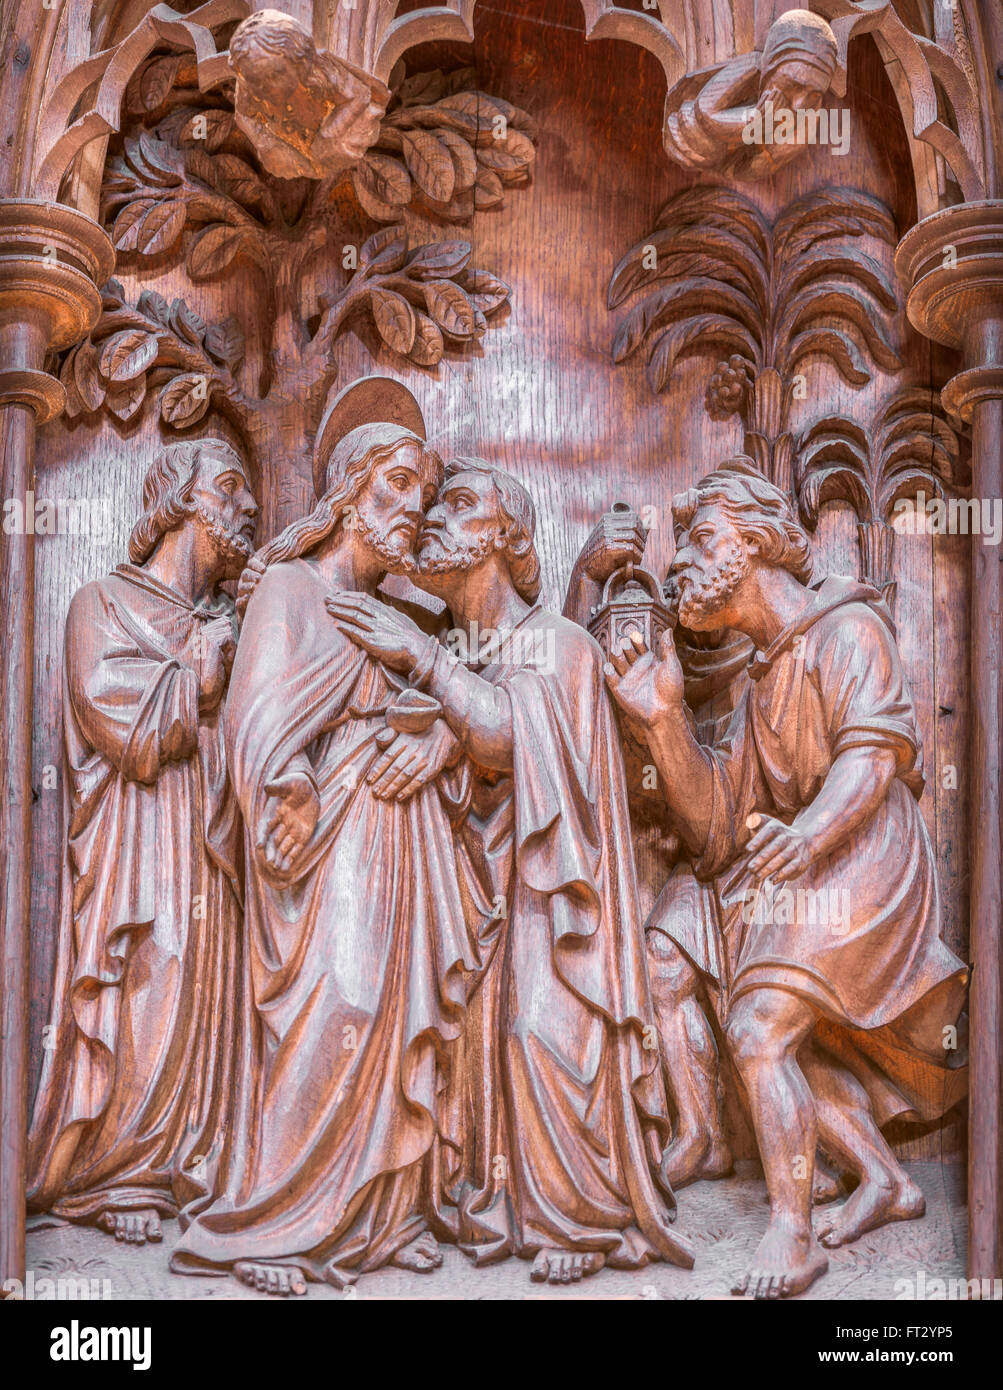 Jésus est trahi par un baiser par un de ses disciples, Judas Iscariote, aux soldats de le grand prêtre juif. Banque D'Images